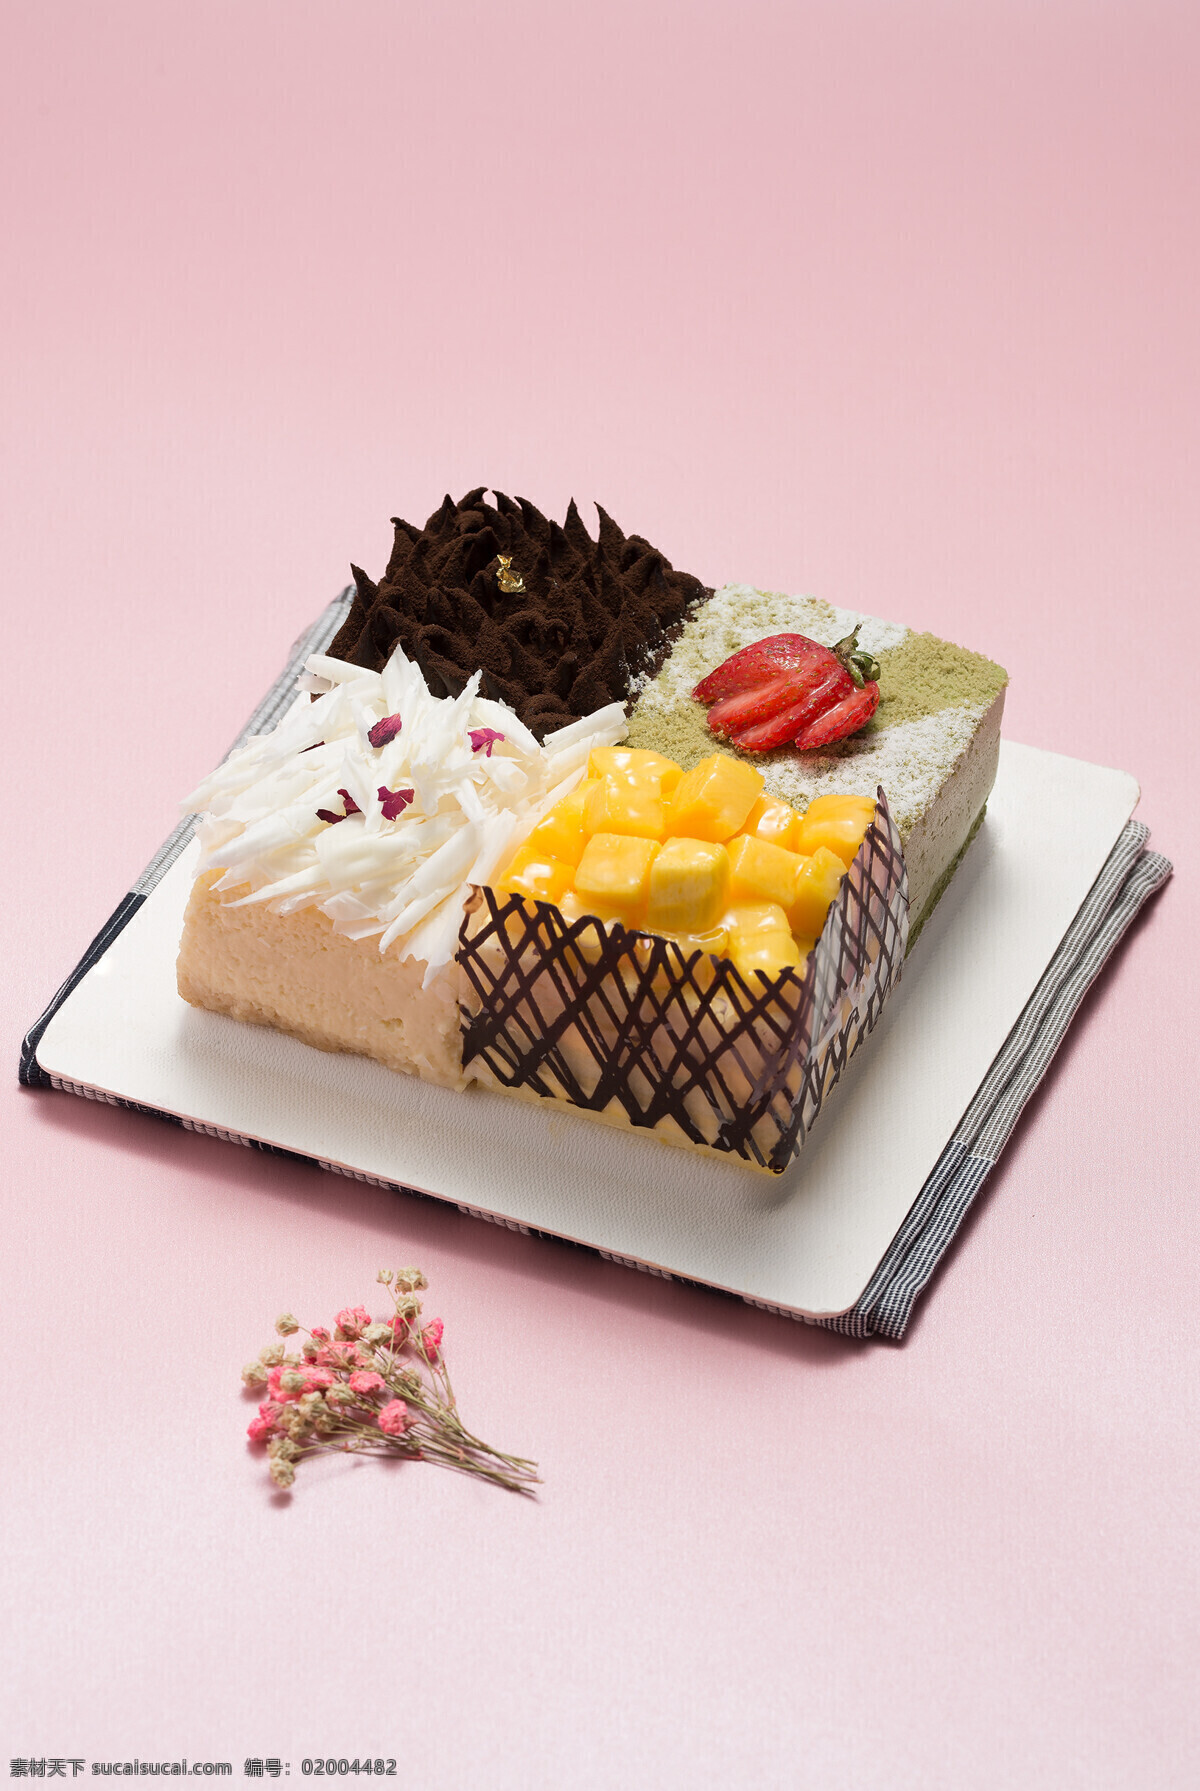 芝士水果蛋糕 甜品 美味 芝士 水果 芒果 草莓 蛋糕 餐饮美食 西餐美食